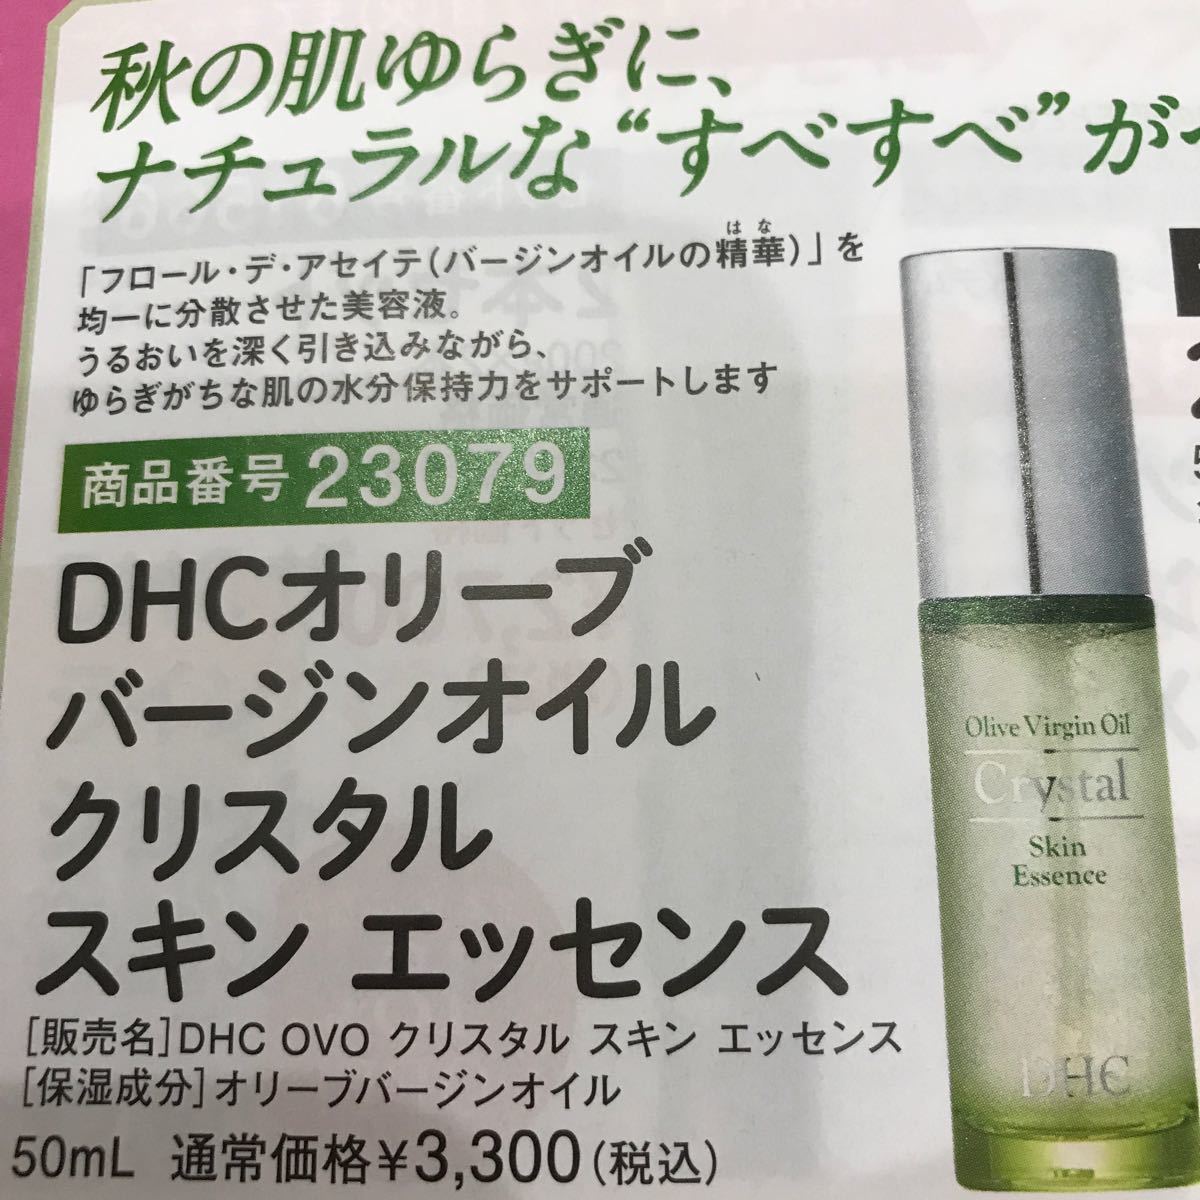 DHC☆オリーブバージンオイルクリスタルスキンエッセンス